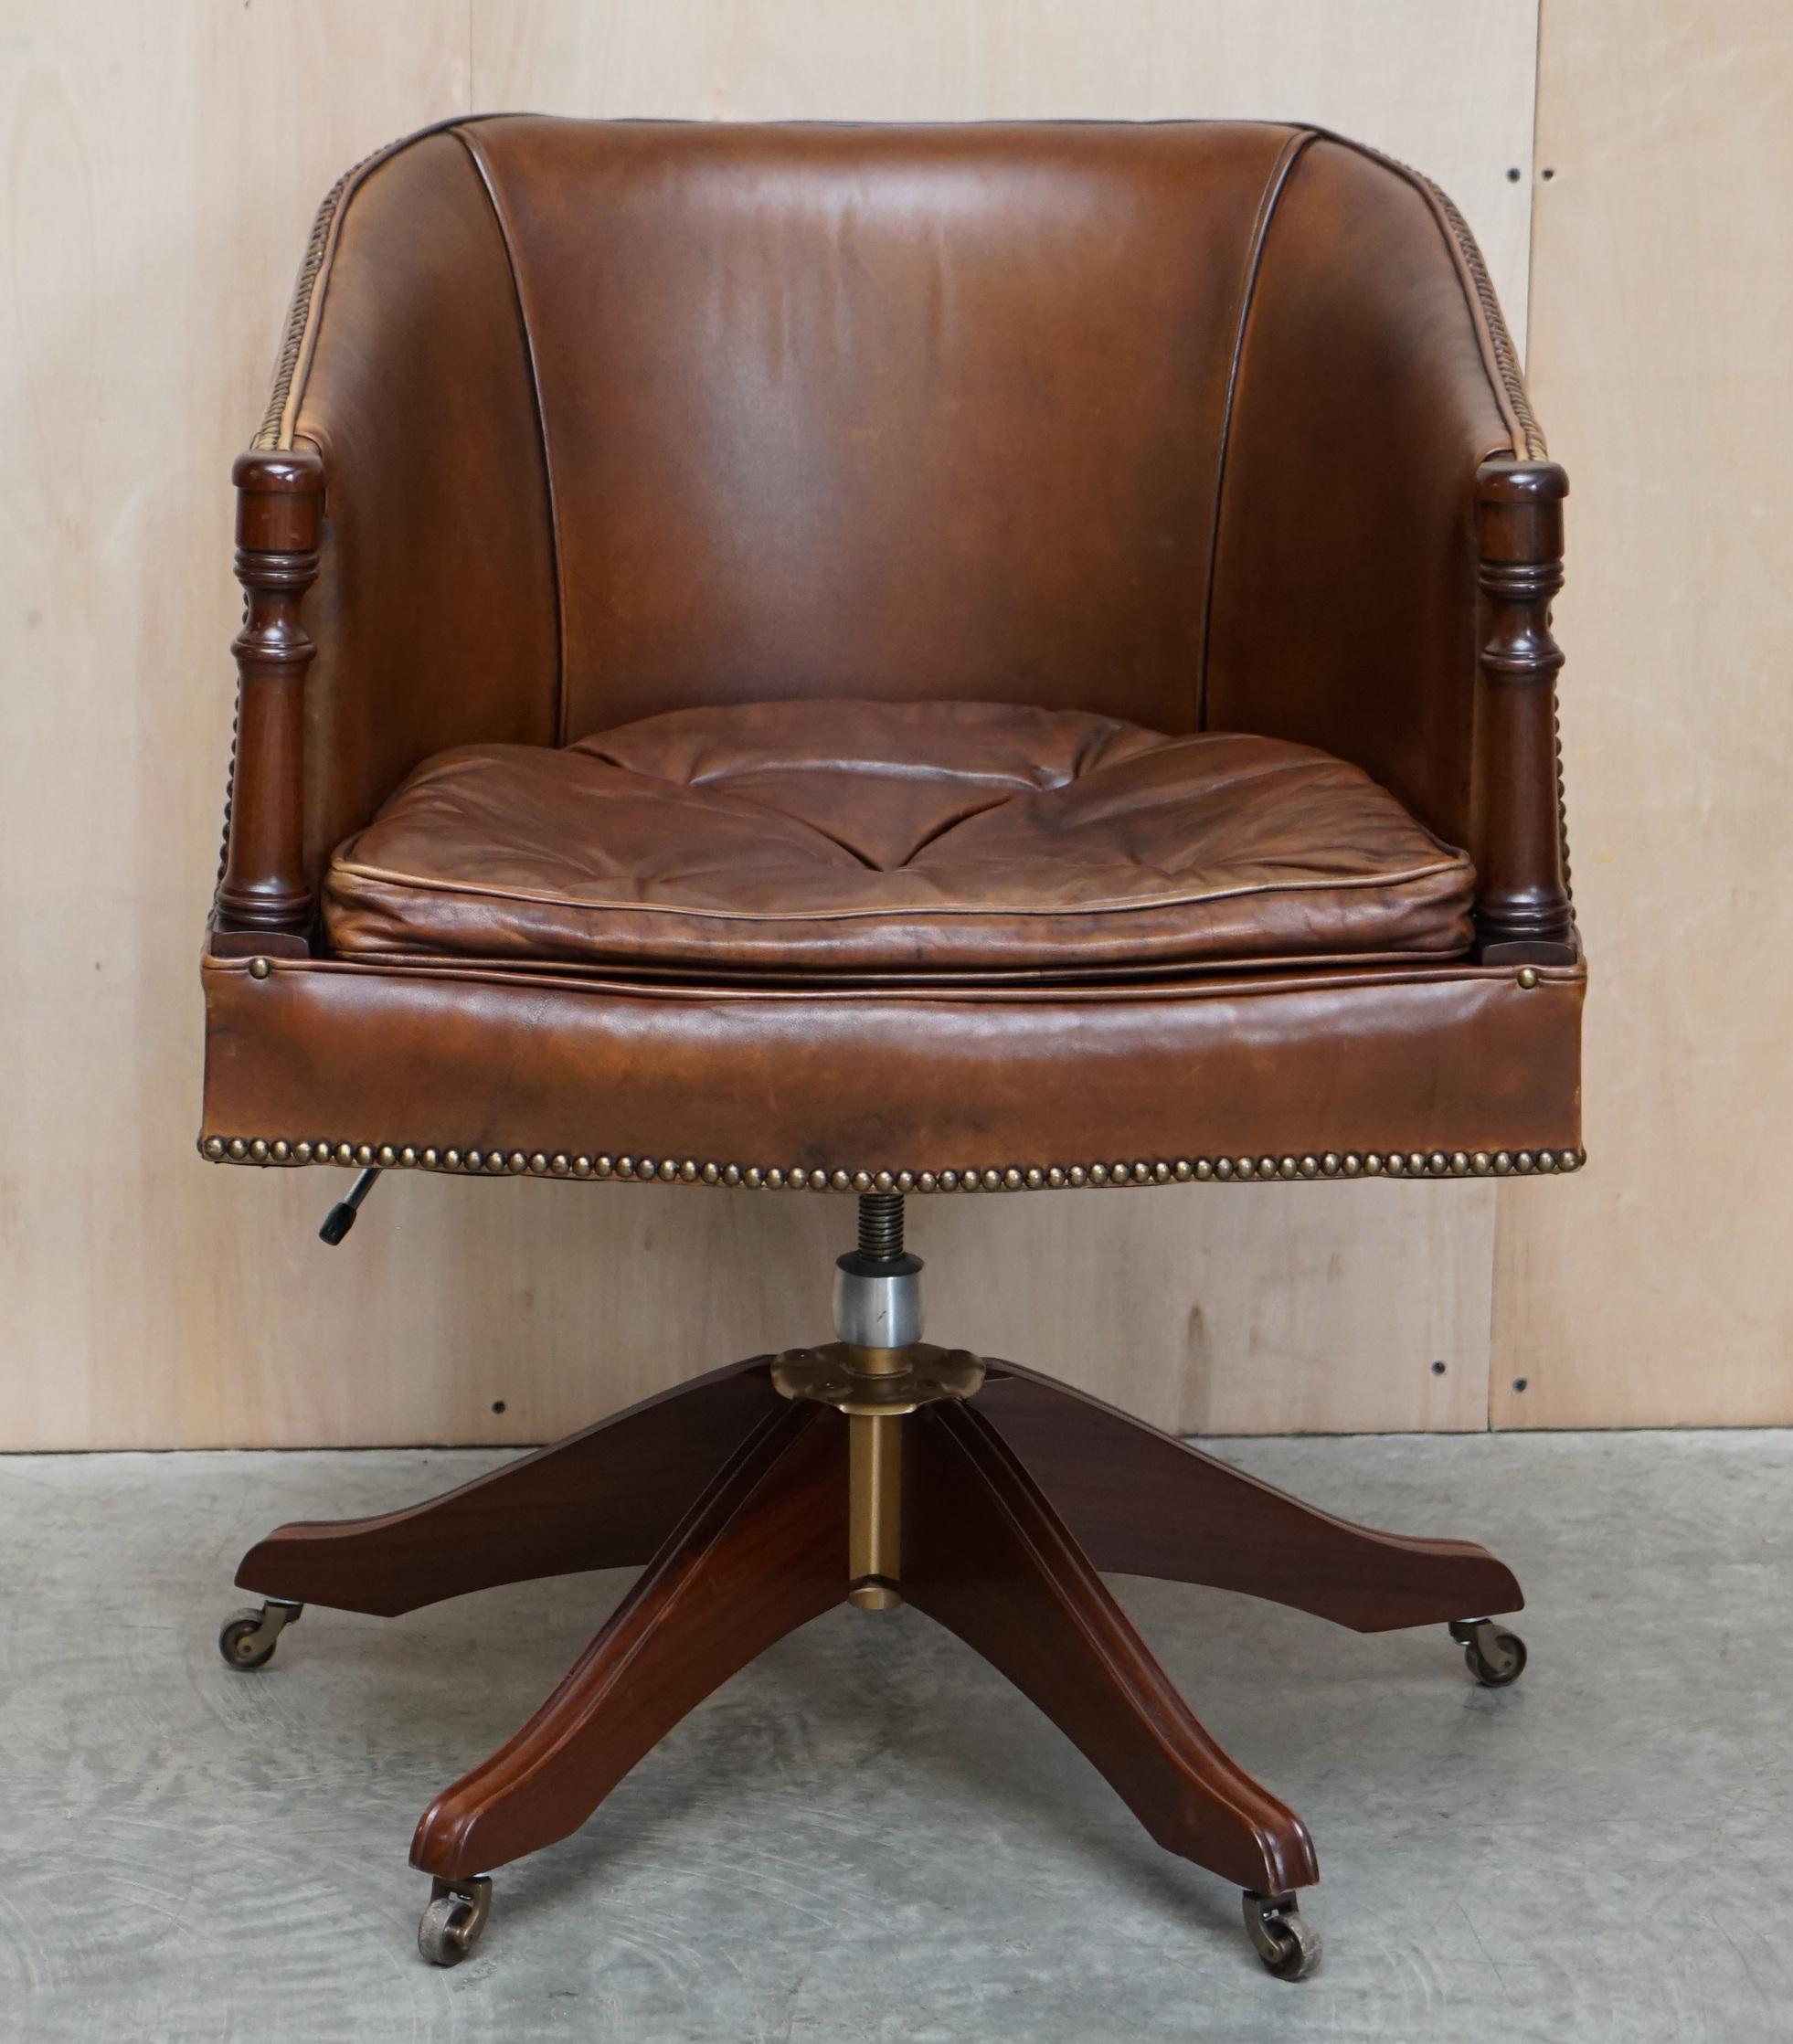 Nous sommes ravis d'offrir à la vente ce charmant fauteuil de capitaine pivotant en cuir marron teint à la main, avec des boutons flottants de style Thomas Chippendale sur le coussin.

Cette pièce est très décorative, les pieds et les accoudoirs